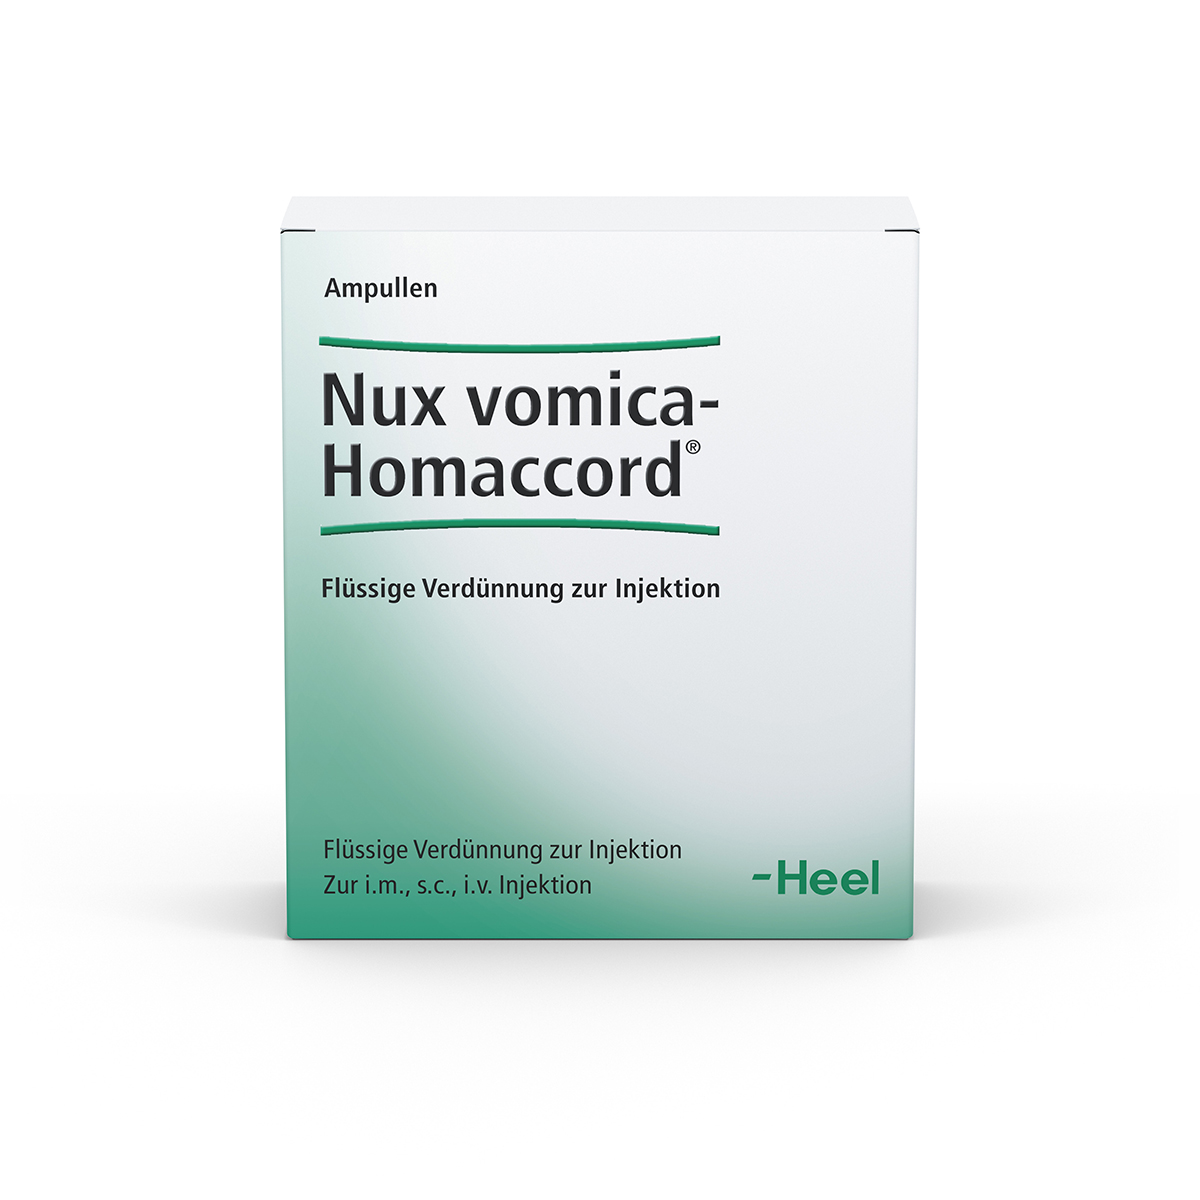 Nux vomica-Homaccord® Ampullen Ampullen